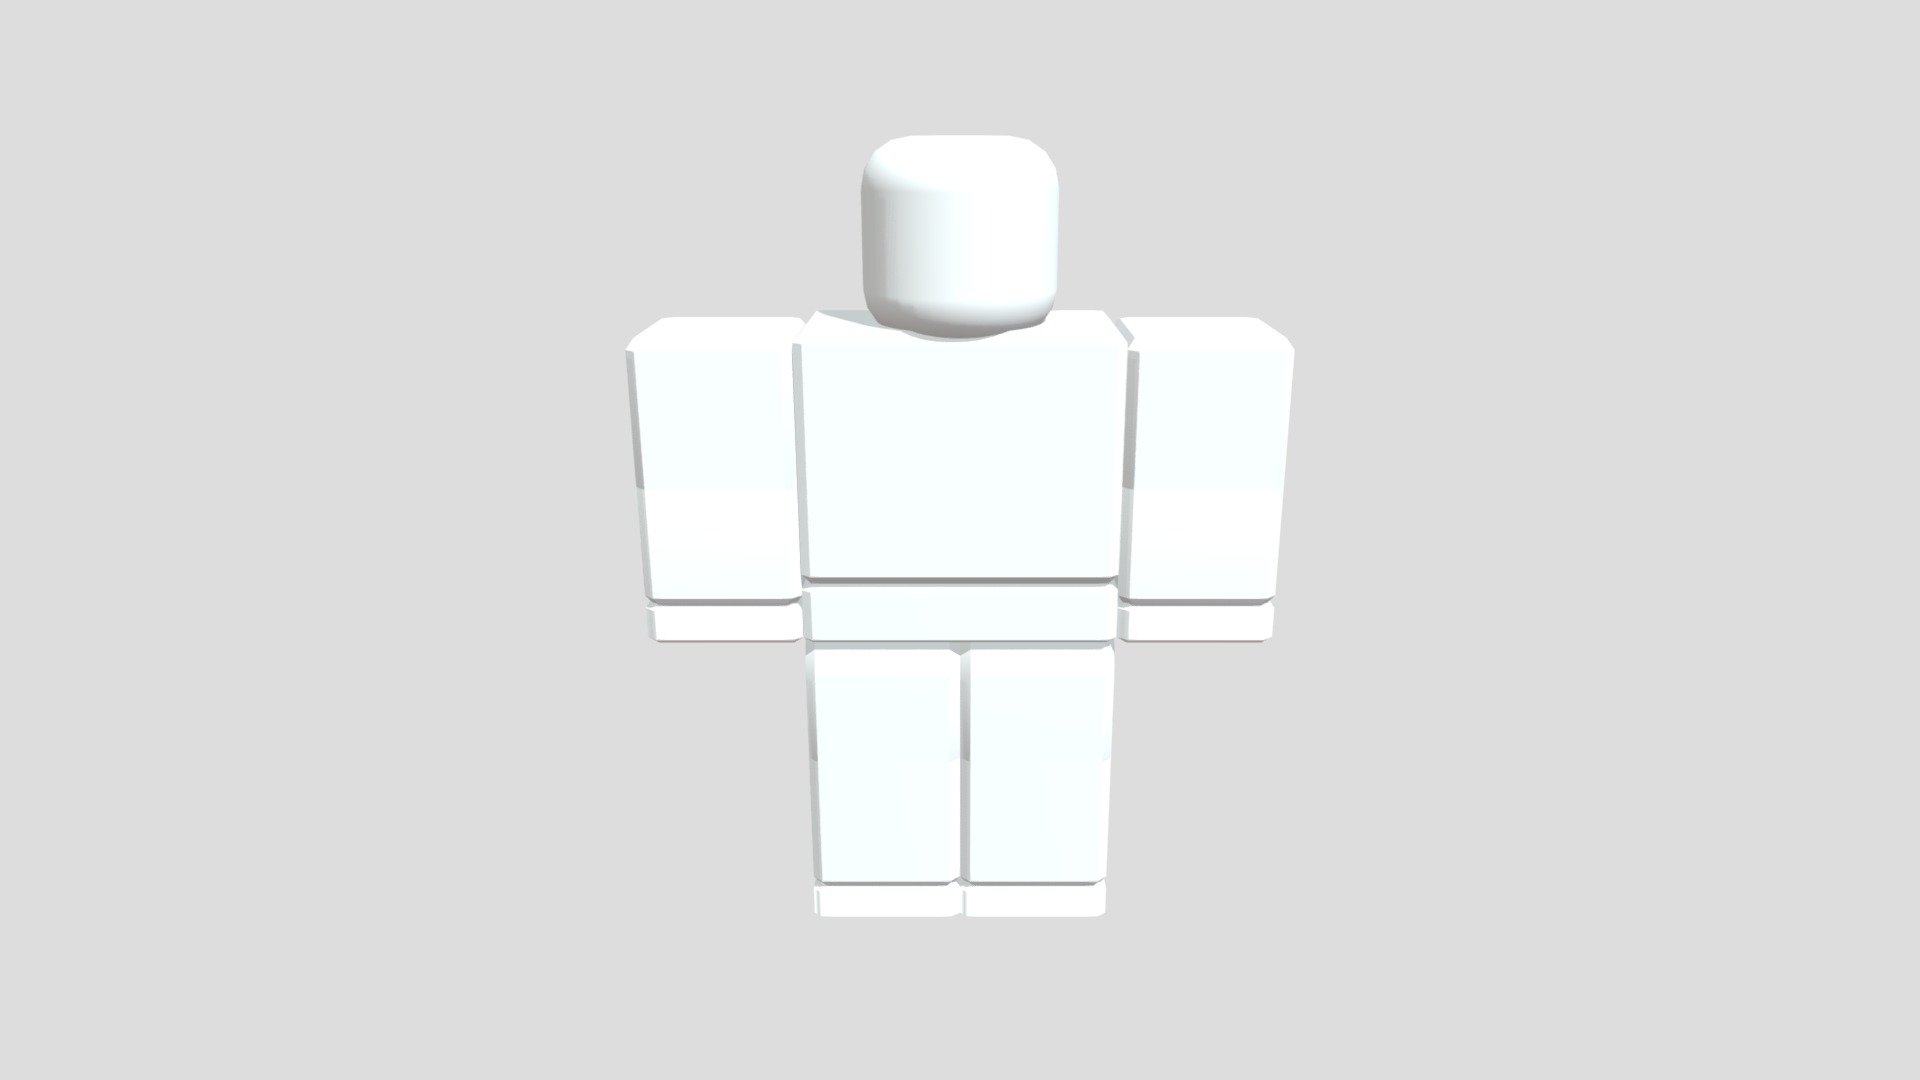 Robux pixel icon 3D - 3D model by Filanata28 (@guye0355) [7815a4e]